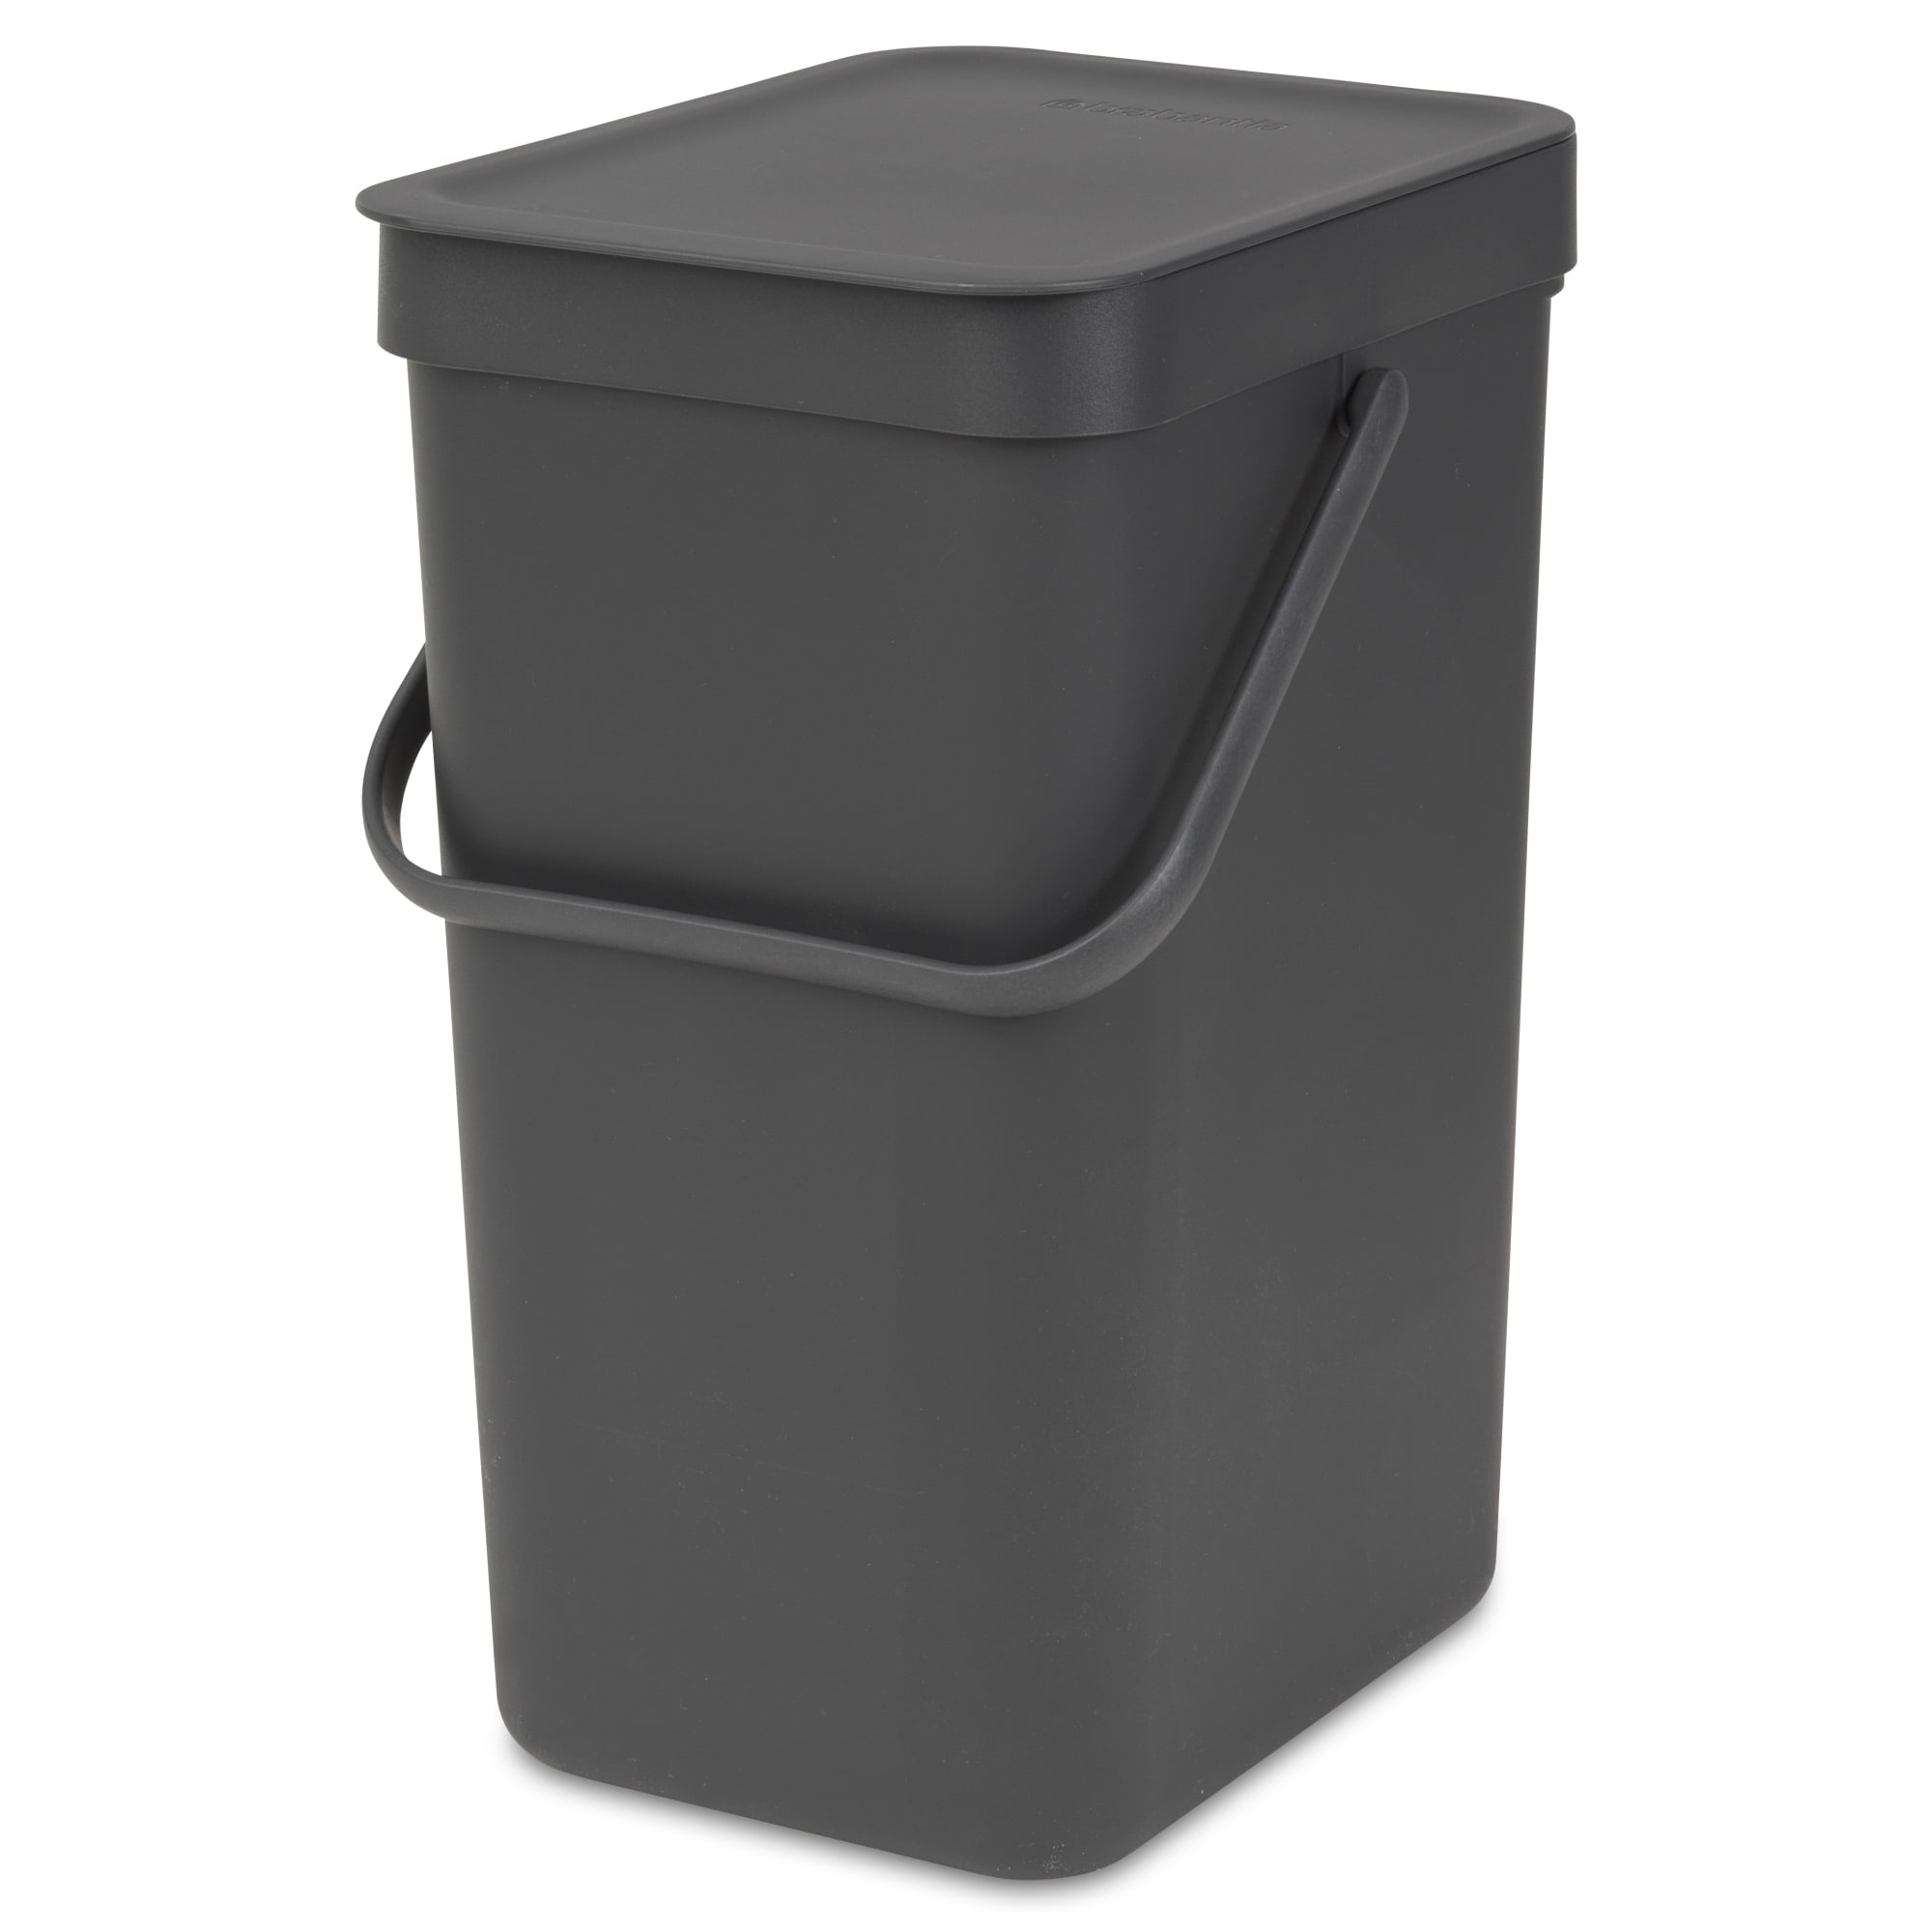 12 liter - Smart affaldssortering til hjemmet